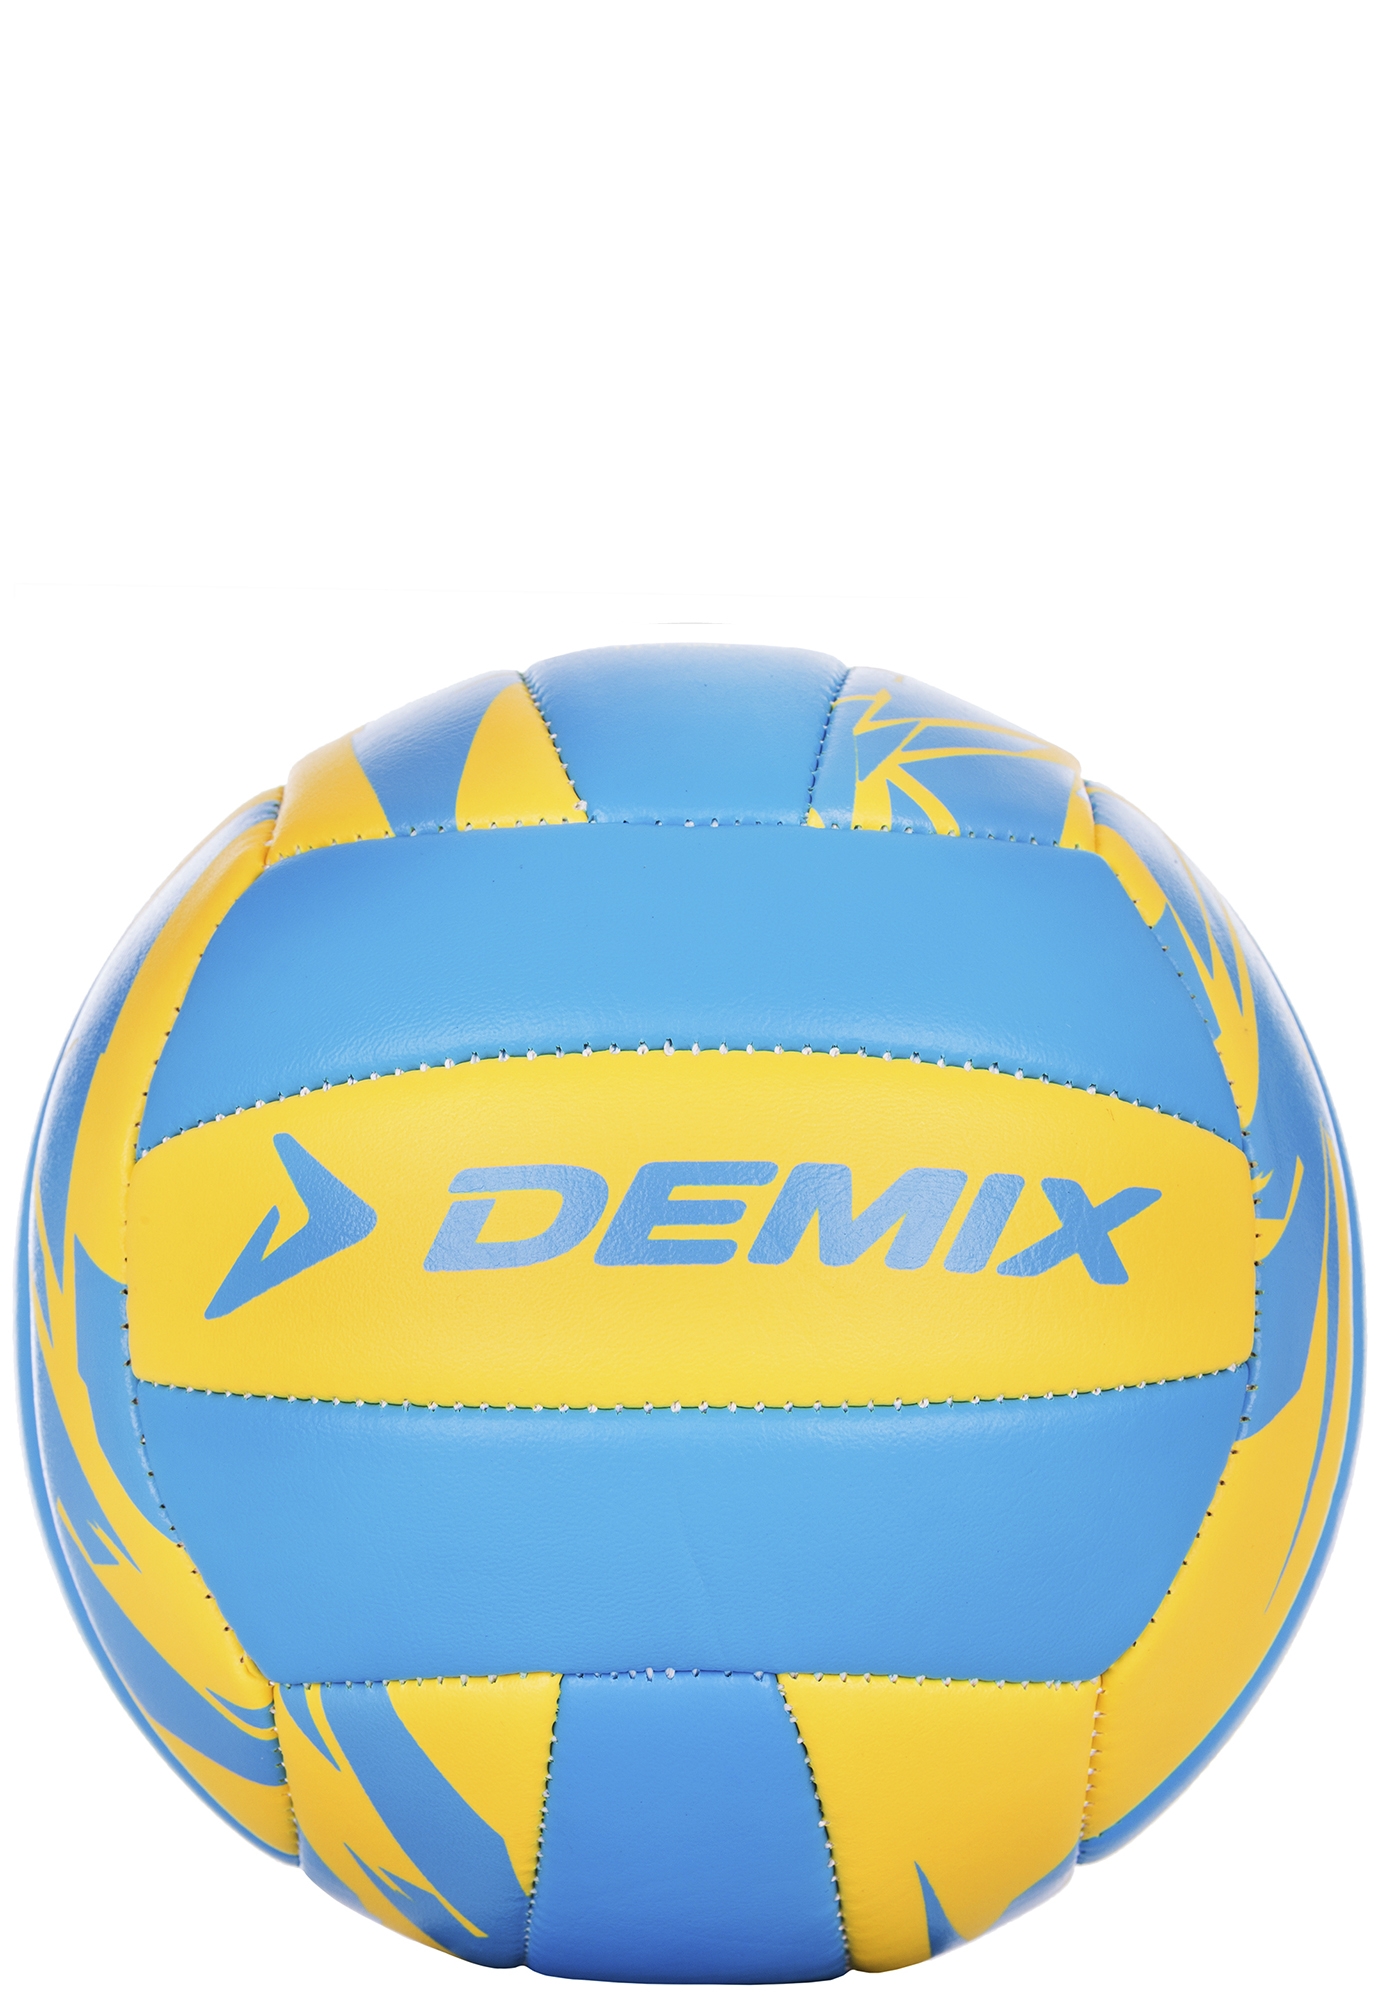 М'яч волейбольний Demix